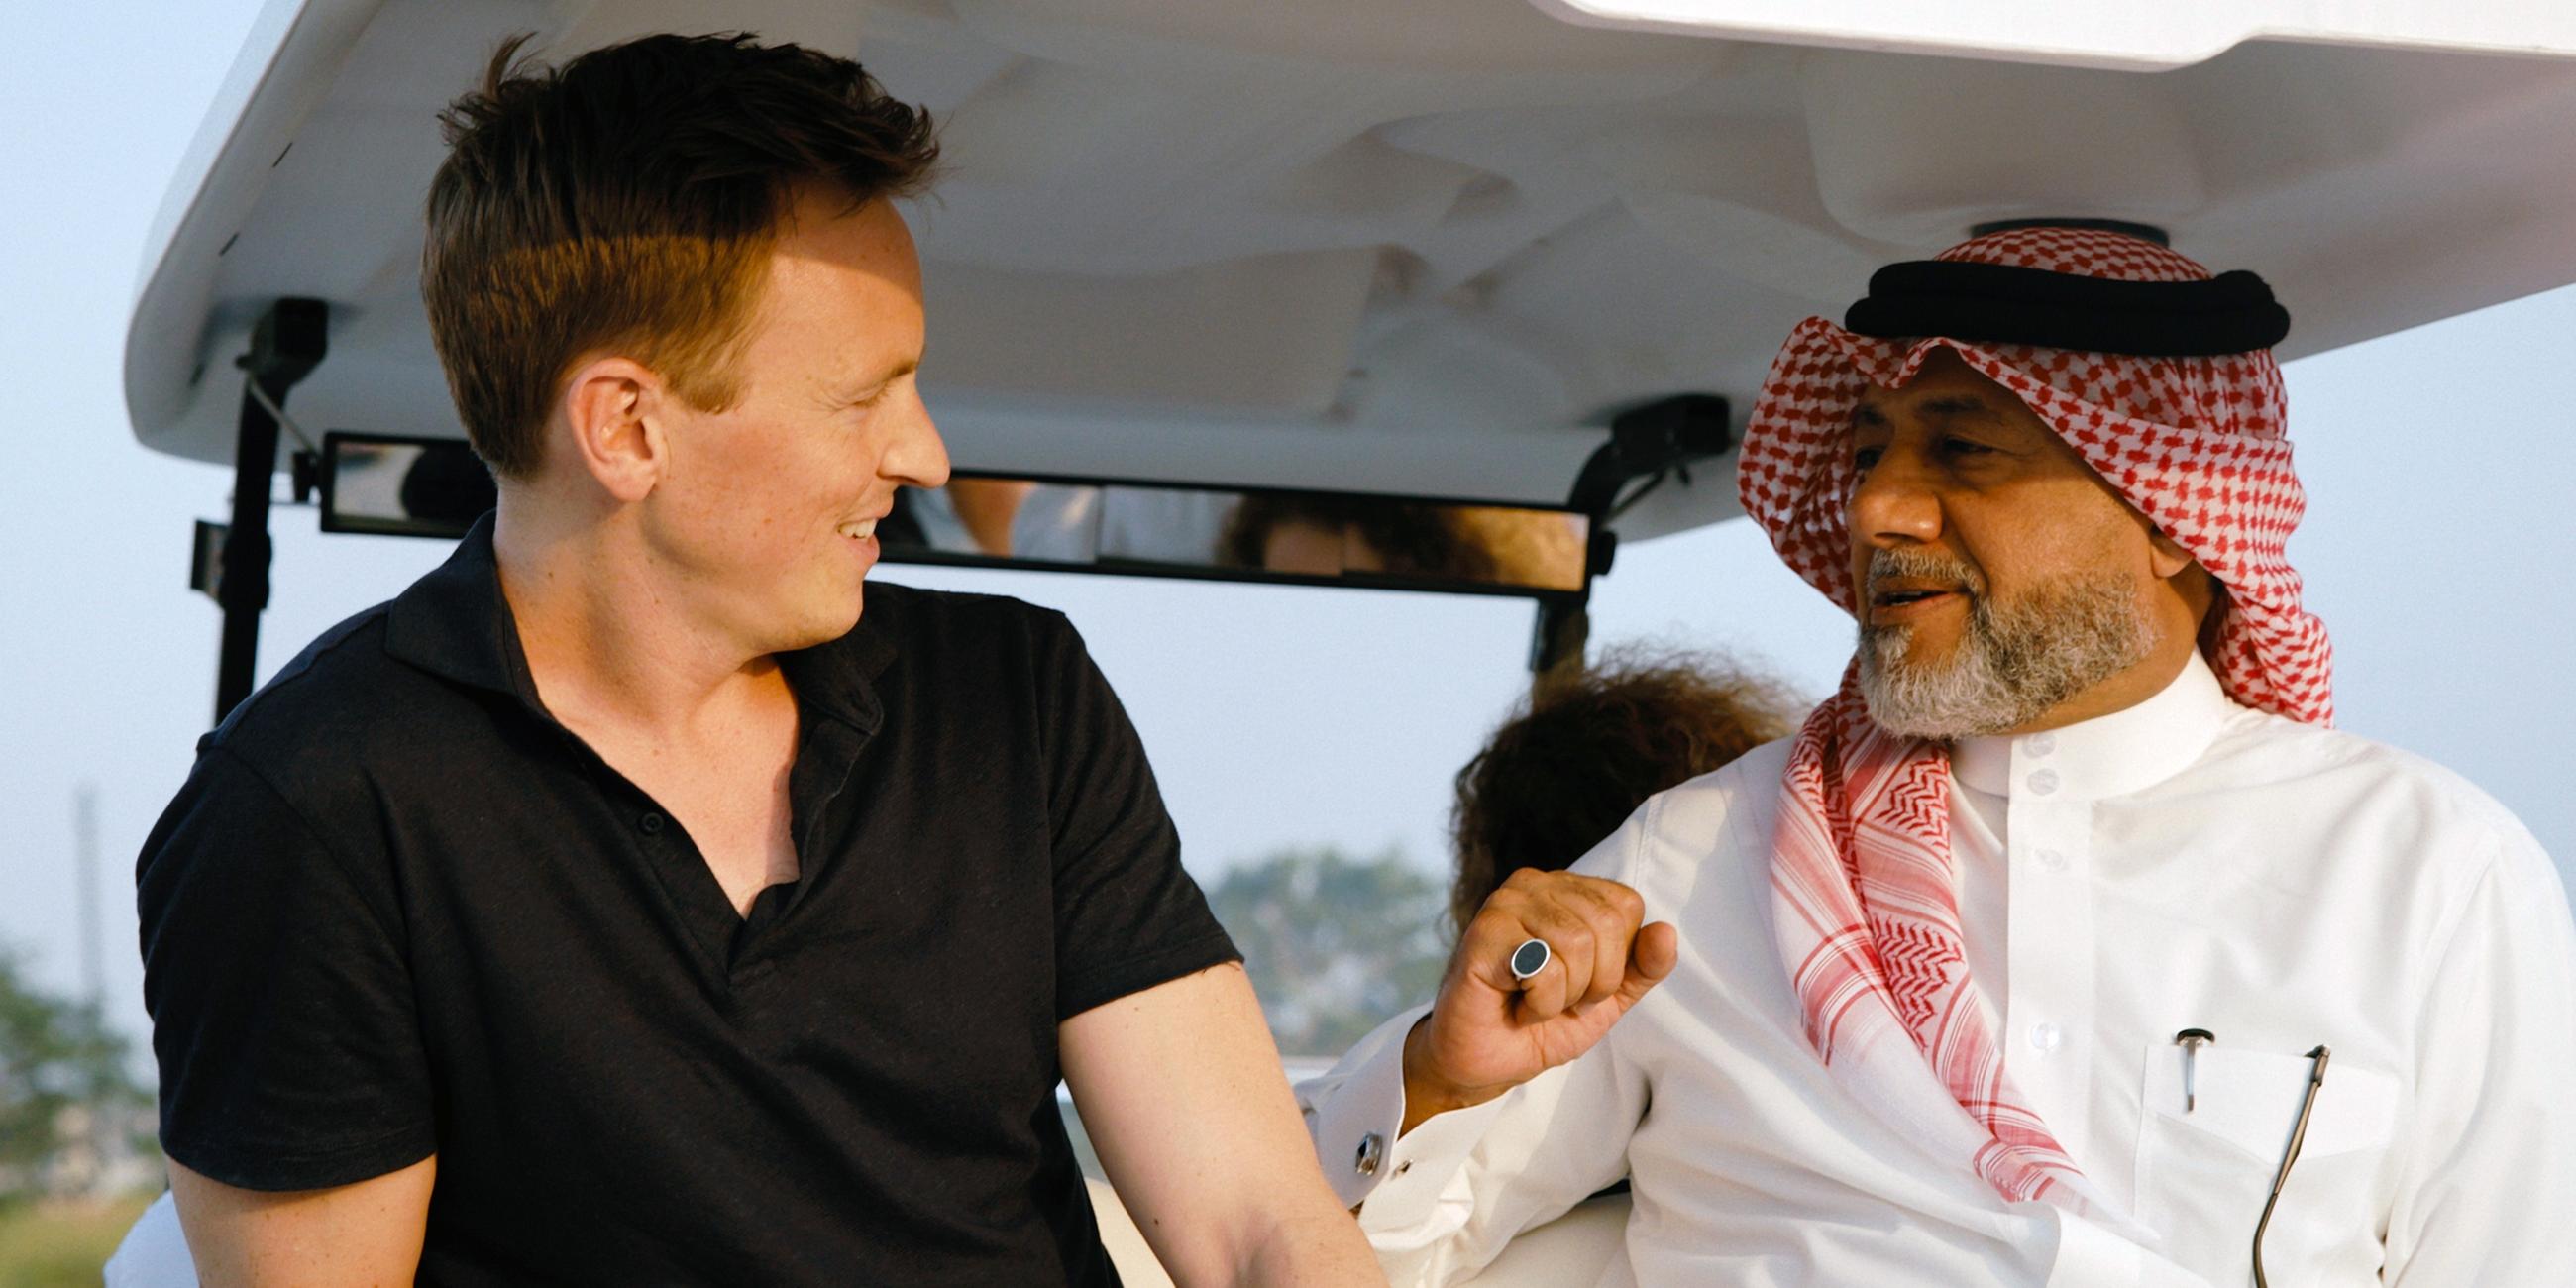 09.11.22, Katar: Journalist und Sportmoderator Jochen Breyer spricht auf der Reportagereise in Katar mit Khalid Salman